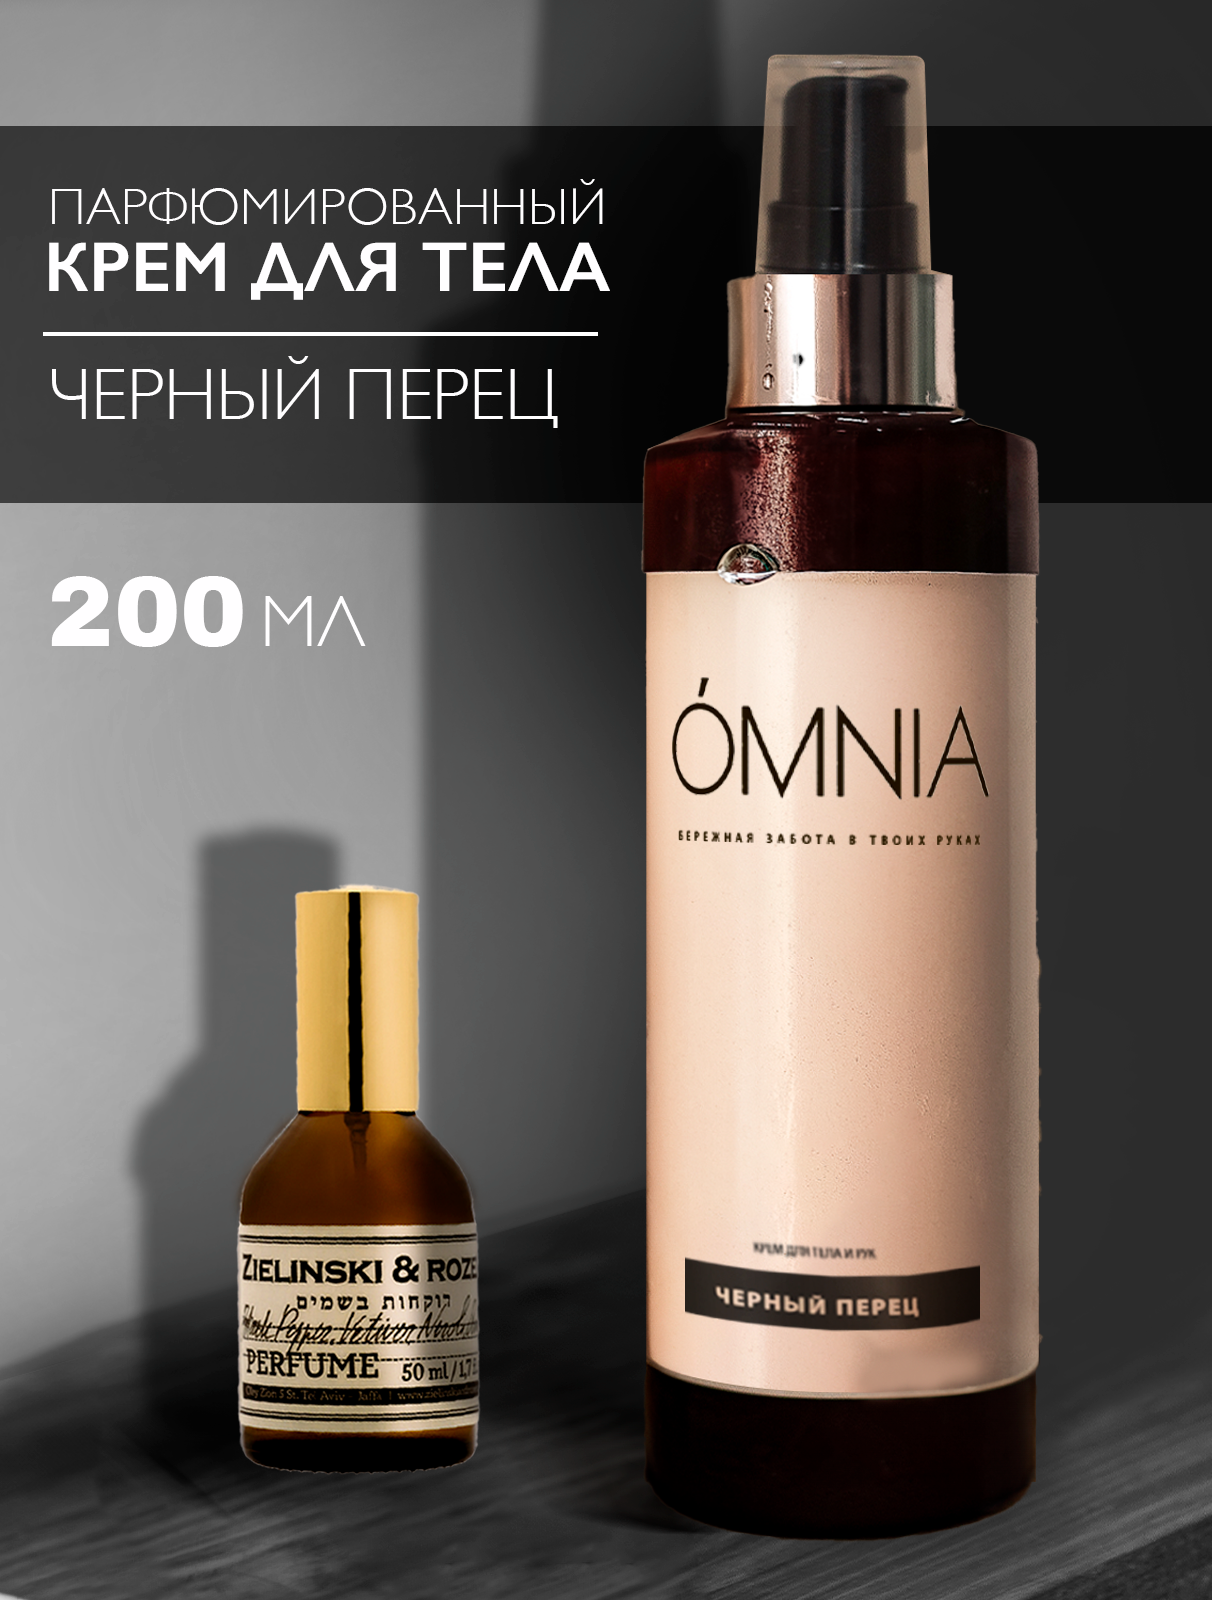 Крем для тела увлажняющий 200 мл, парфюмированный крем баттер черный перец OMNIA/ уход за кожей и телом